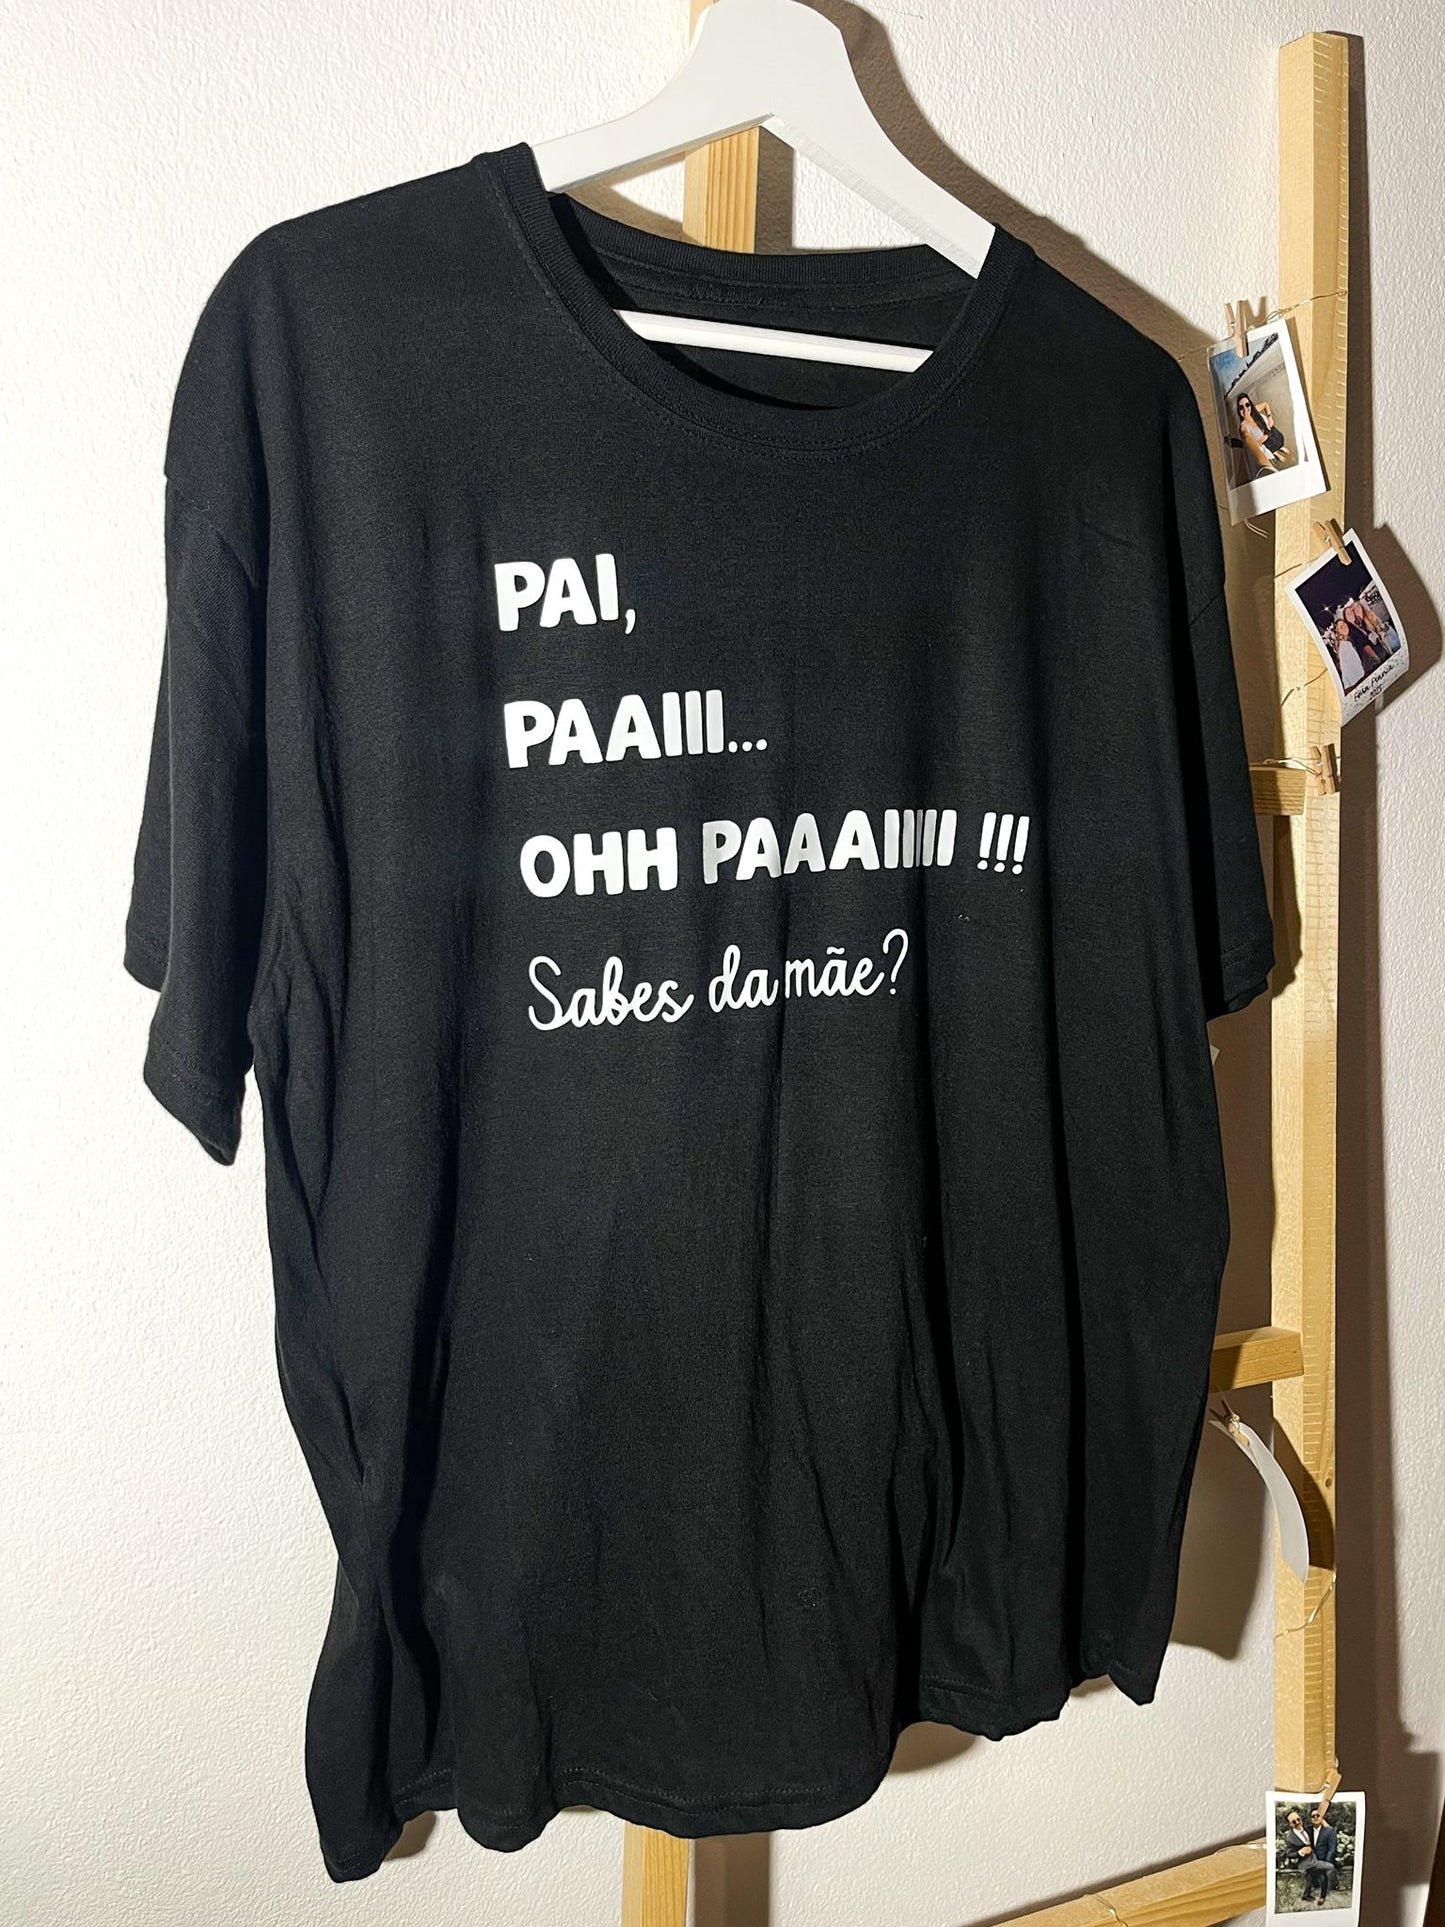 T-shirt - "Oh Paiii"